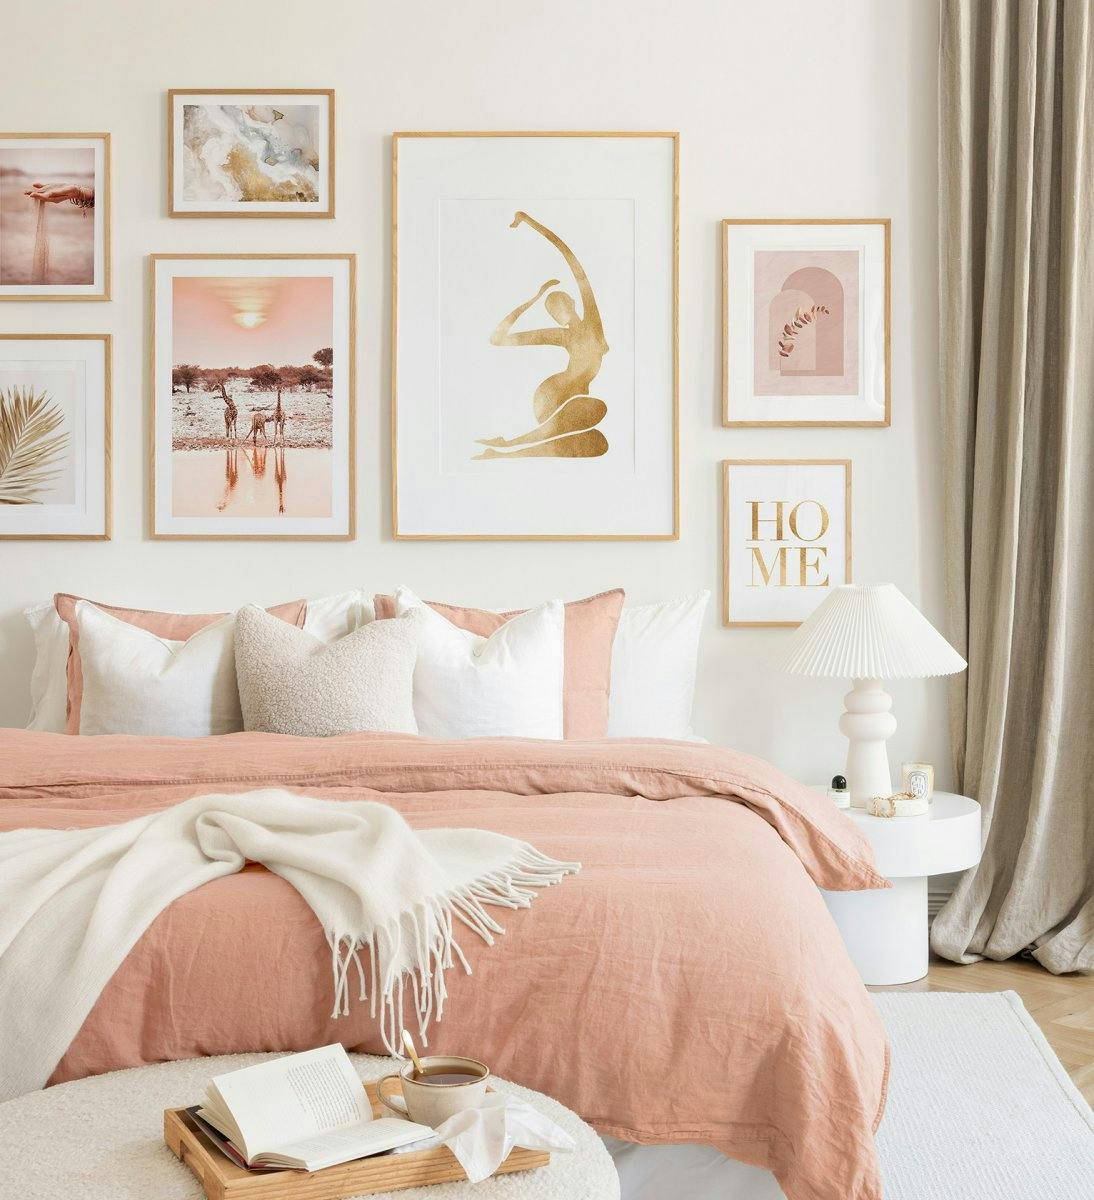 오크 프레임 안에 은은한 핑크와 베이지 톤의 갤러리월. 침실에 조화로운 분위기를 연출합니다.